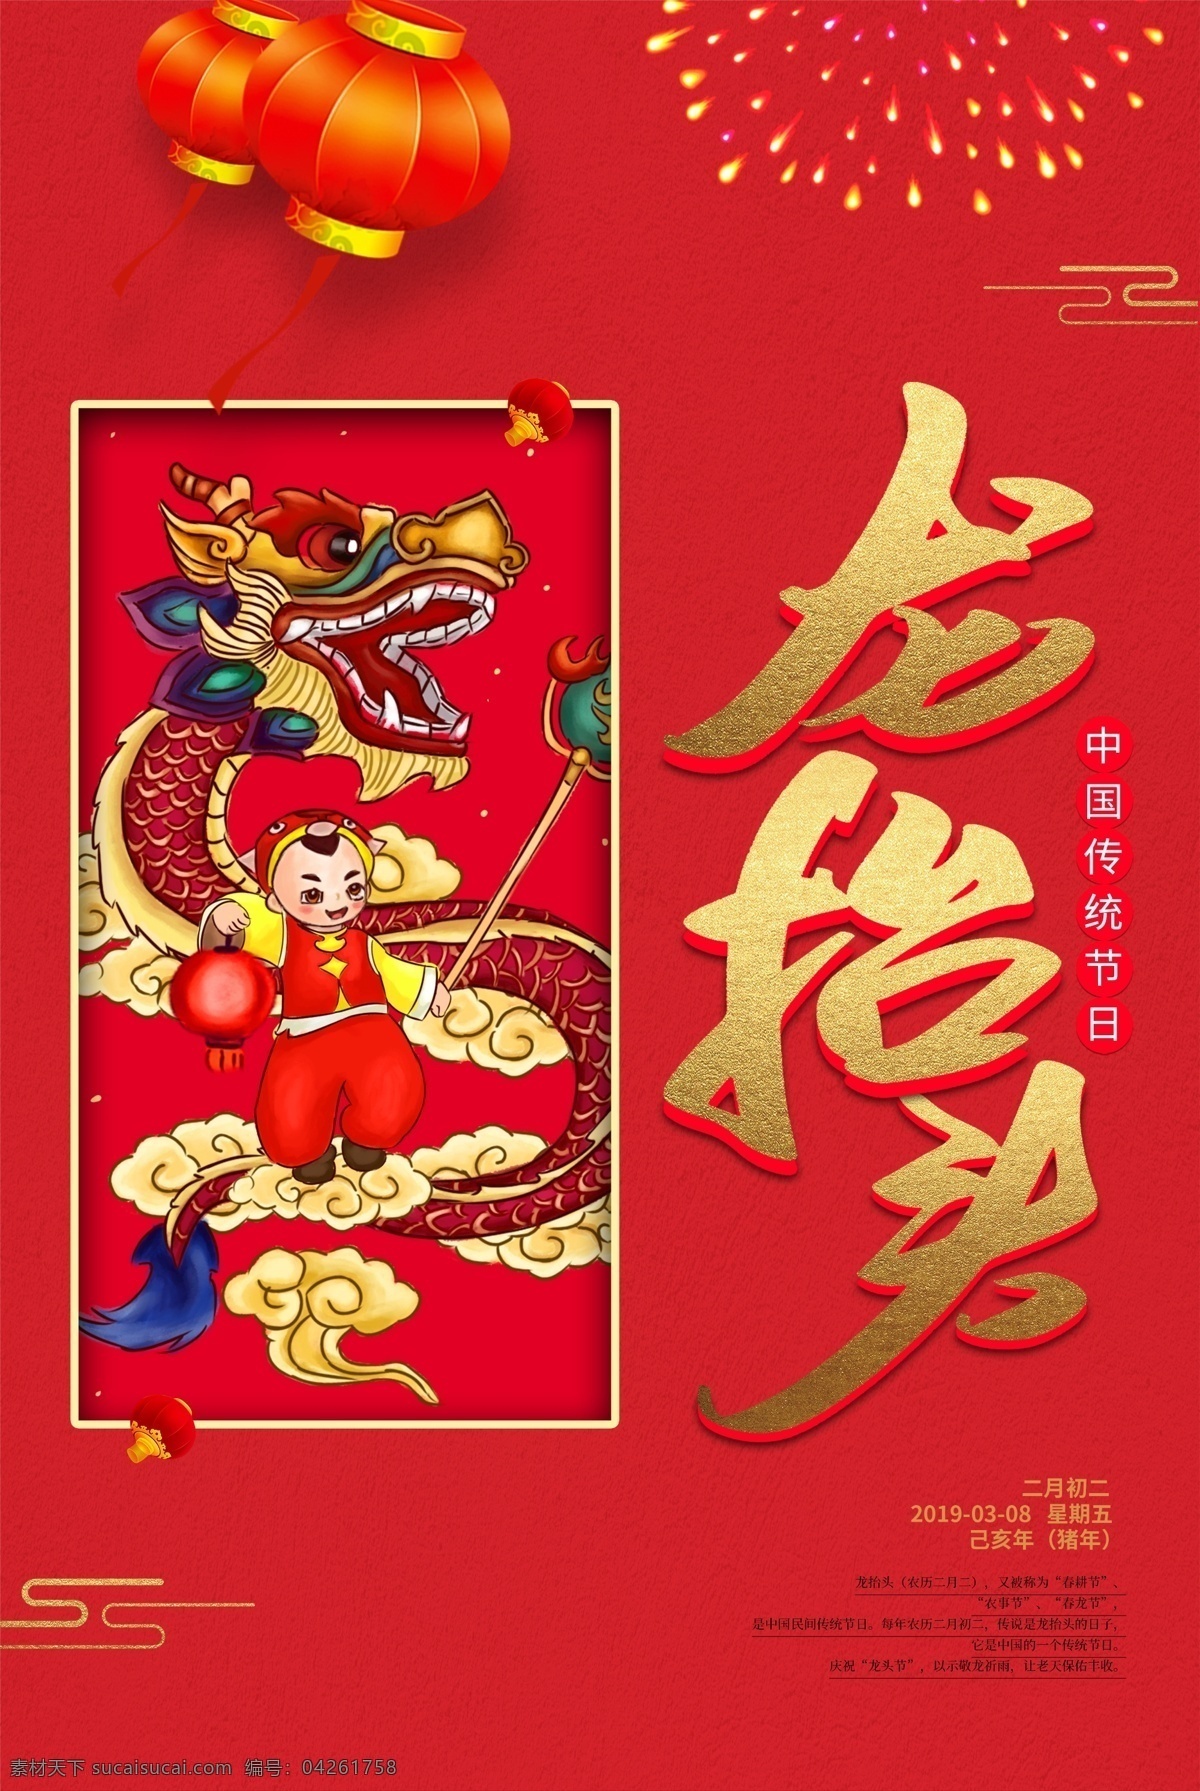 红色 喜庆 龙 抬头 海报 龙抬头 理发 美发 传统习俗 二月初二 节日海报 灯笼 舞龙 传统节日